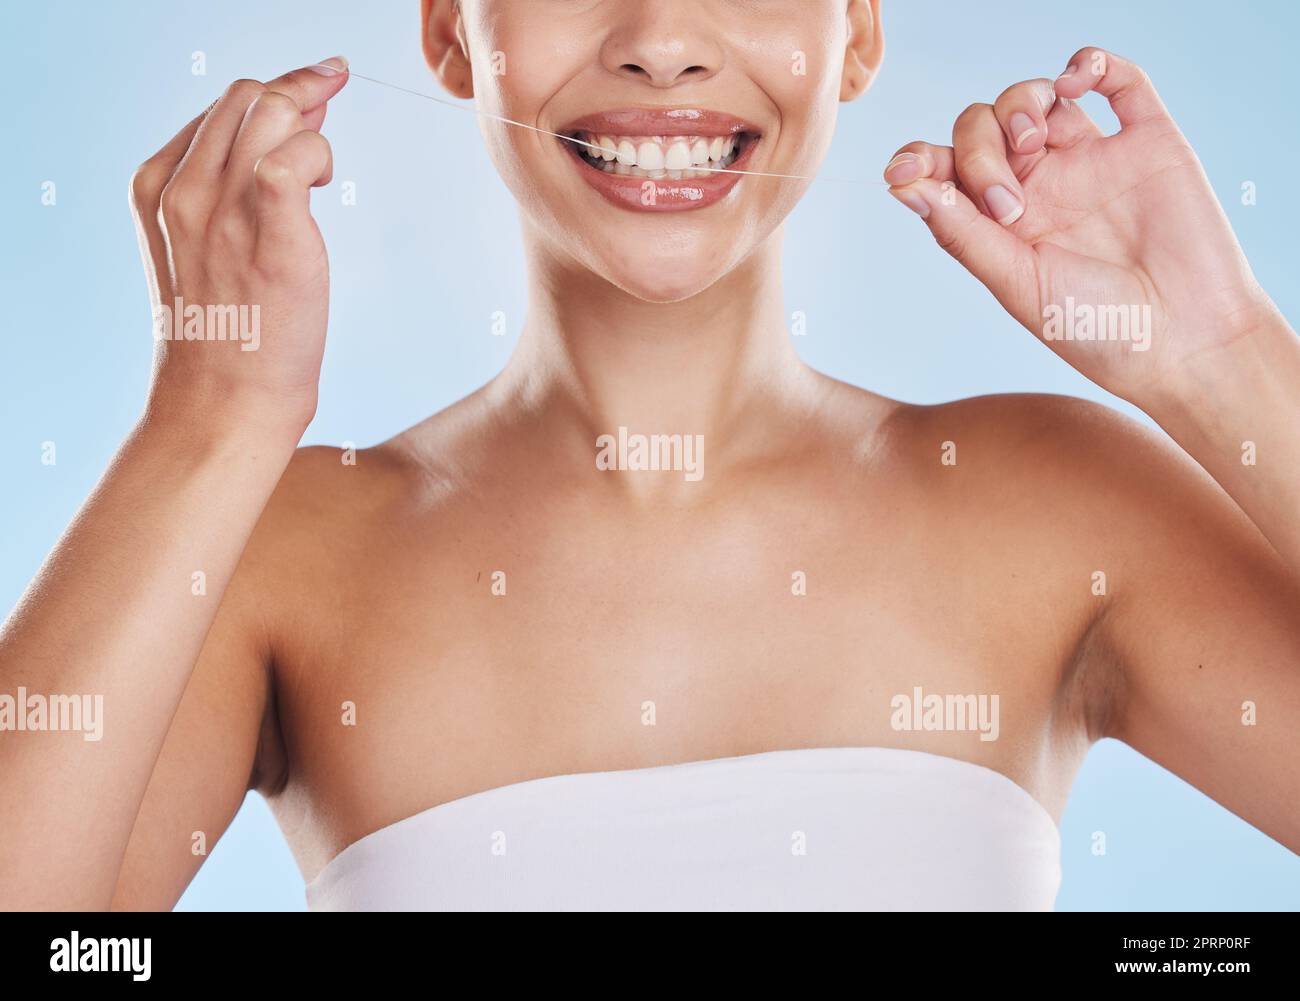 Zahnseide, Zähne und gesundes Lächeln mit einer wunderschönen jungen Frau, die Zahnseide für Mundhygiene und Zahnfleischgesundheit. Nahaufnahme einer glücklichen Frau, die ihren Mund putzt, während ihrer Selfcare Wellness-Routine Stockfoto